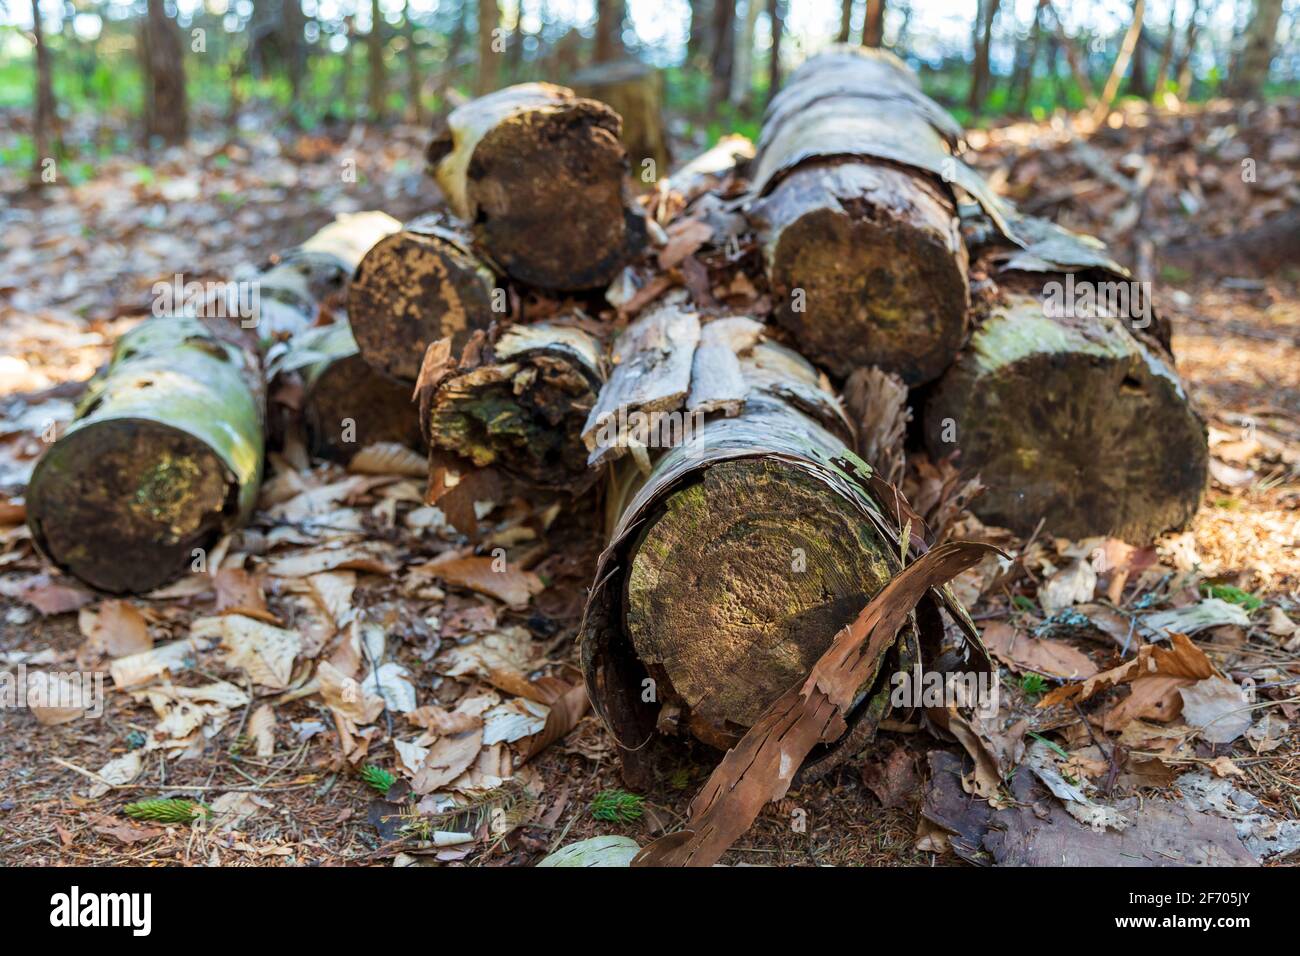 Tagliare gli alberi di betulla accatastati in bushel sul terreno forestale. Legname fatto da alberi di betulla spinto in un piccolo palo e riposante su un terreno forestale che è c Foto Stock